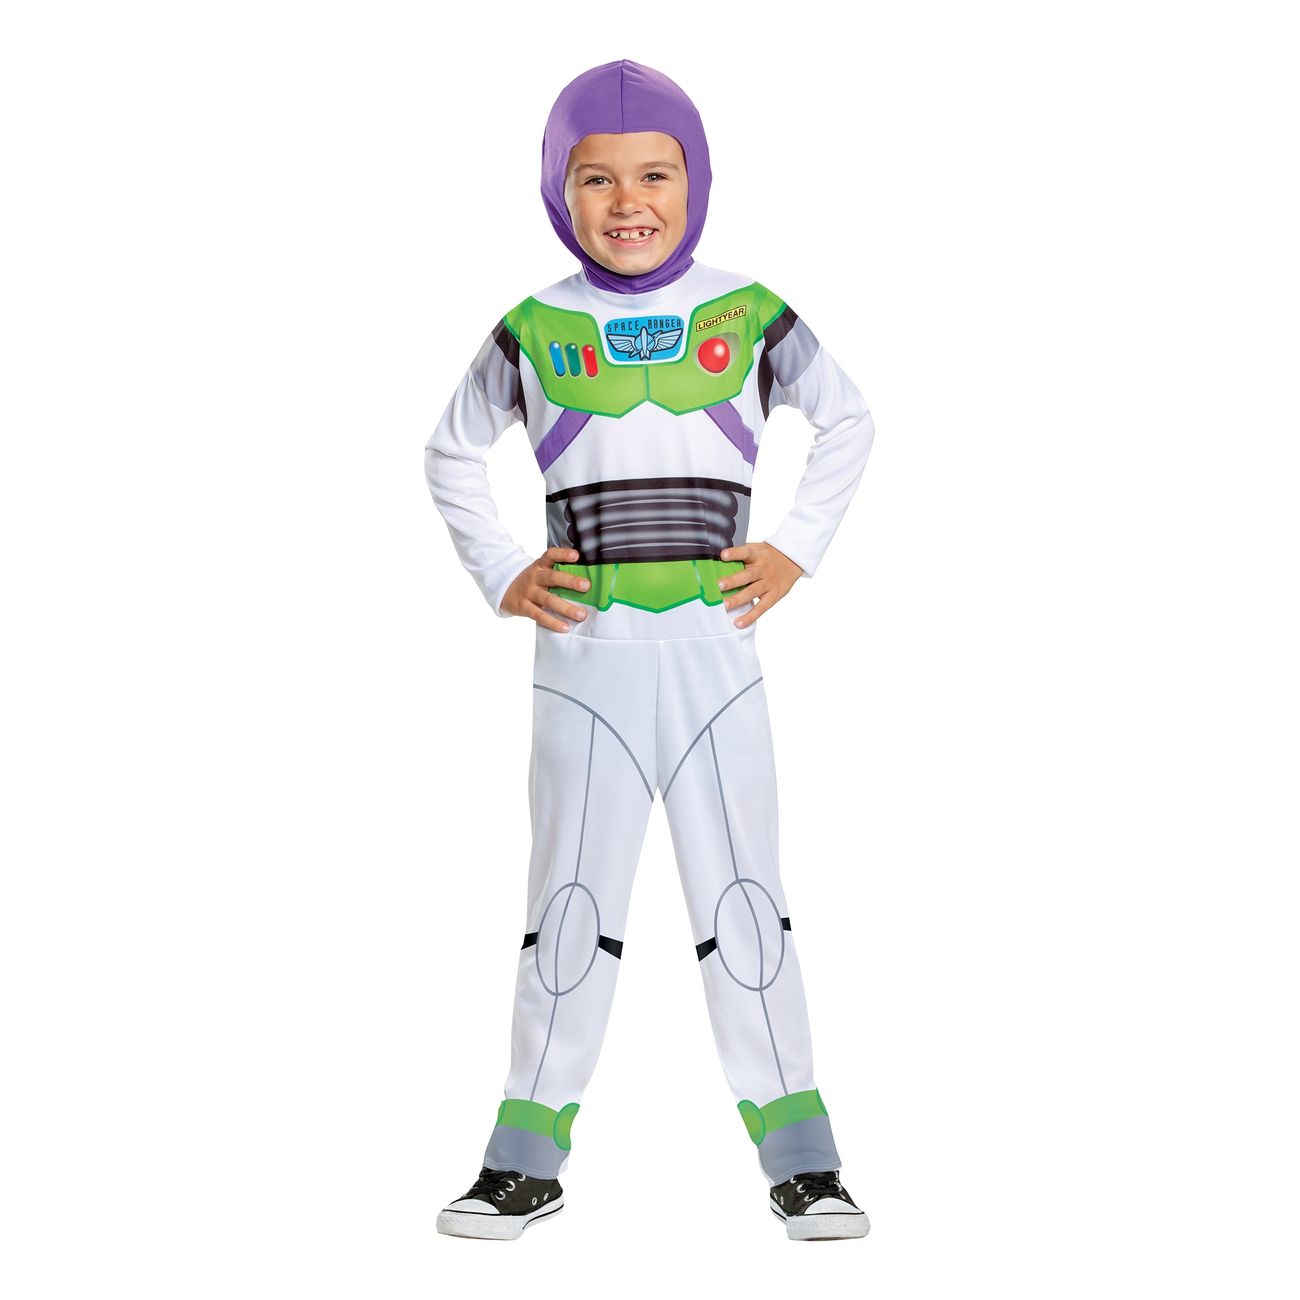 Buzz Lightyear kostume til børn - Toy Story børnekostumer